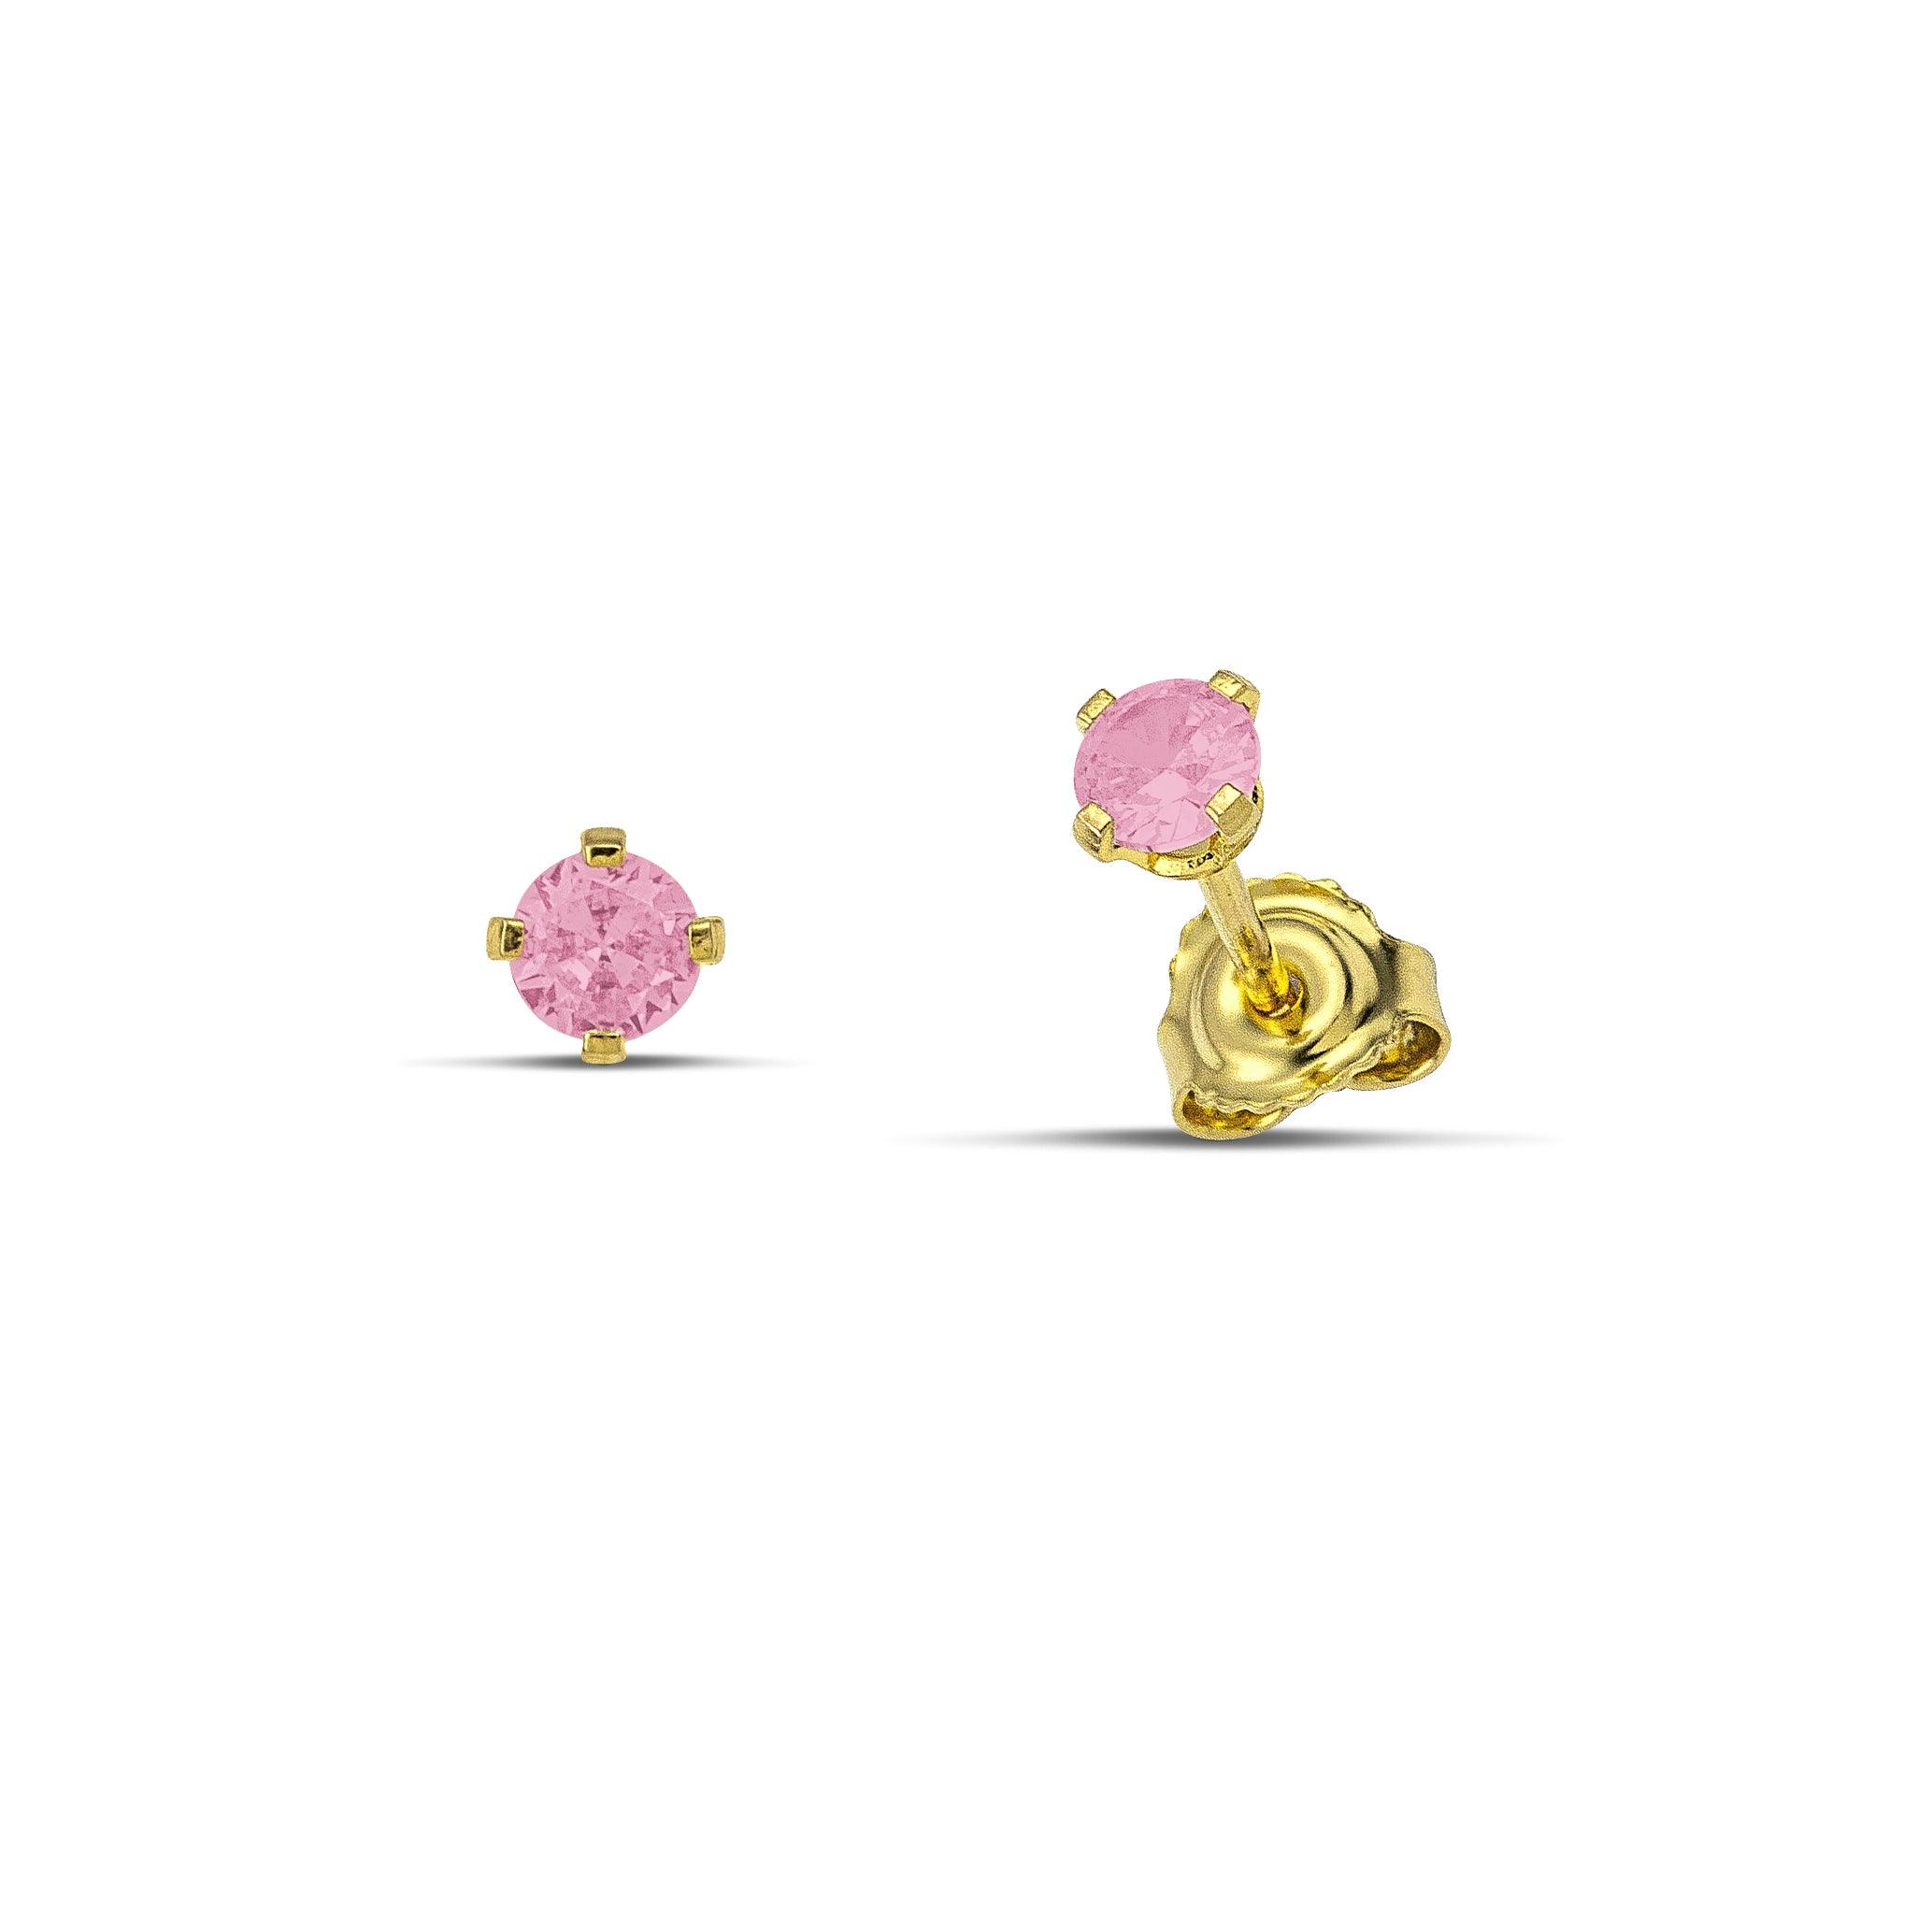 Καρφωτά σκουλαρίκια μονόπετρα από κίτρινο χρυσό 14 καρατίων με ζιργκόν ροζ χρώματος.